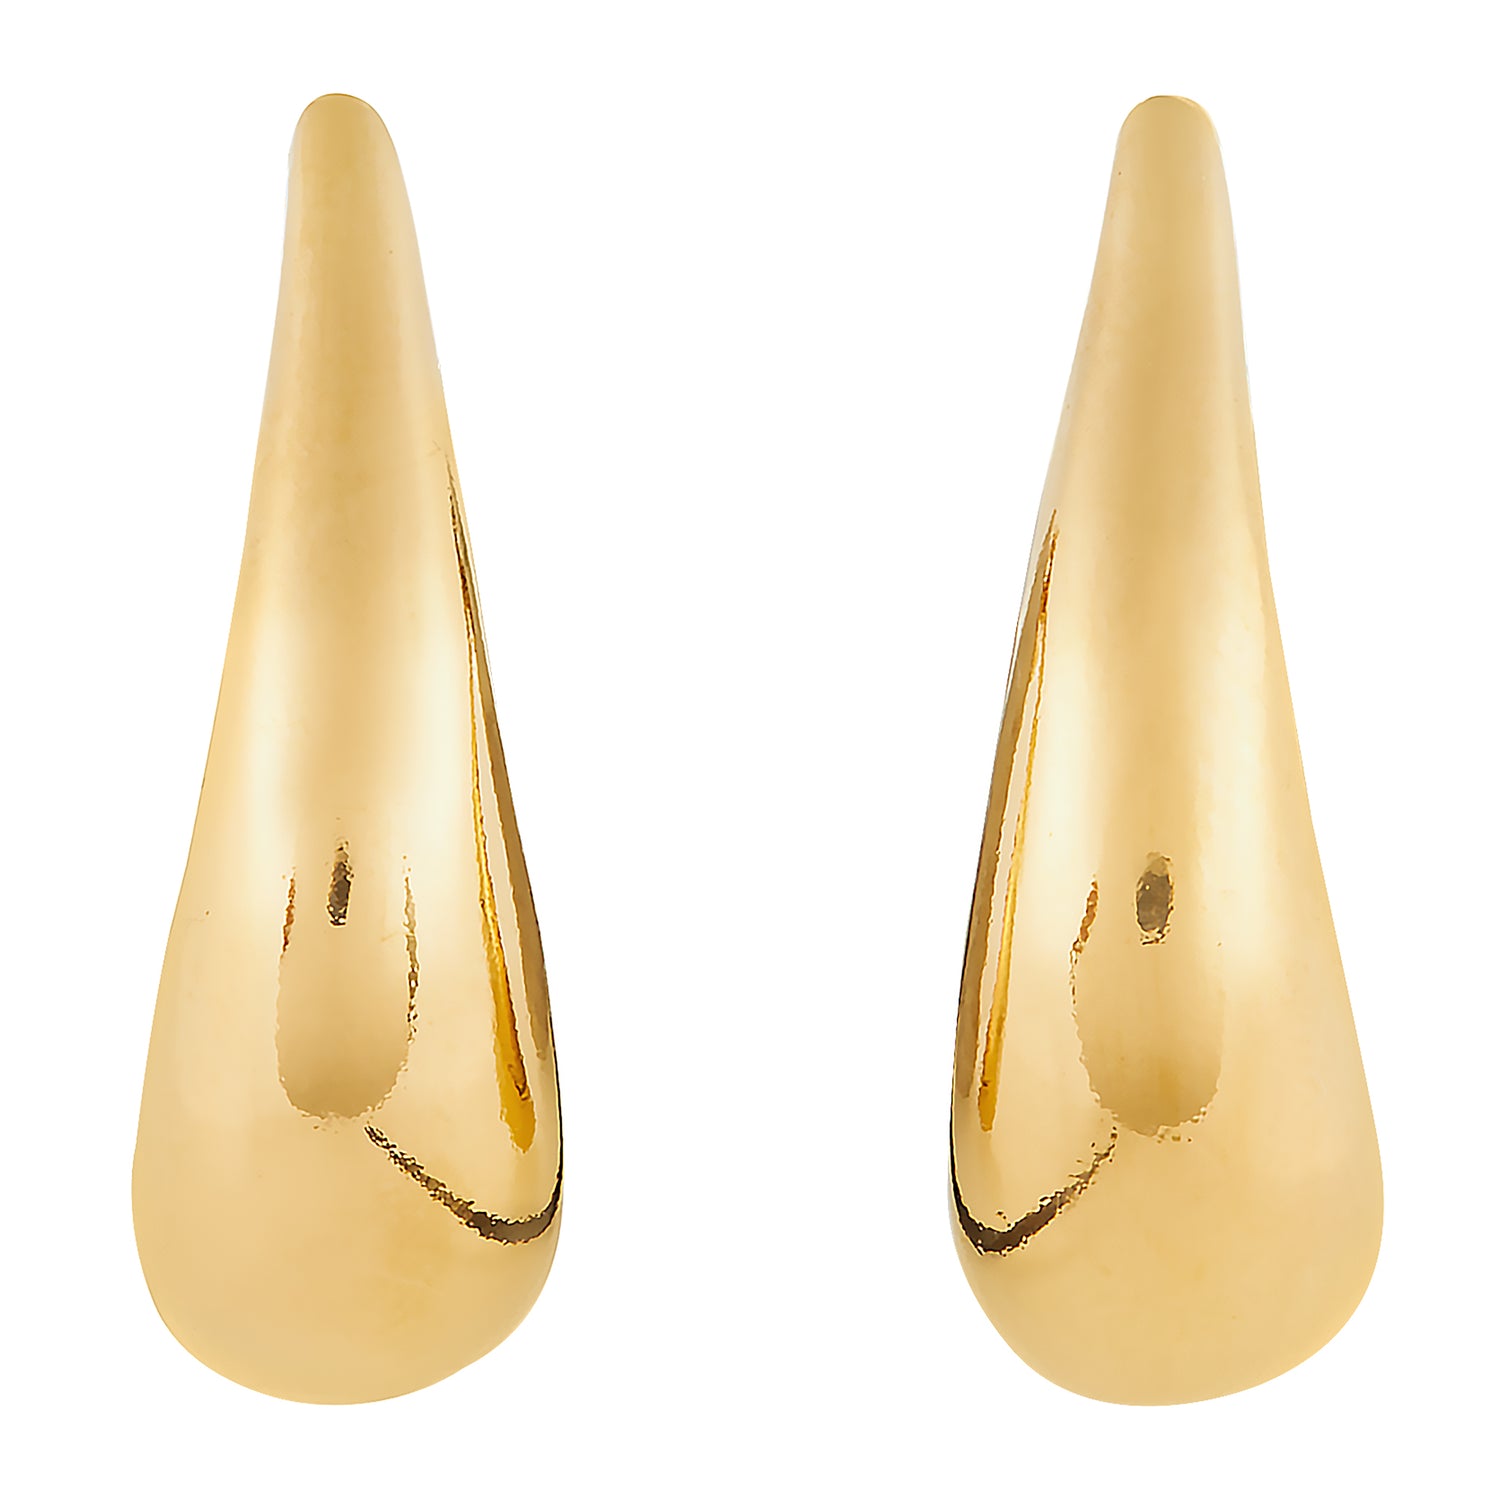 Wave Gold Earrings